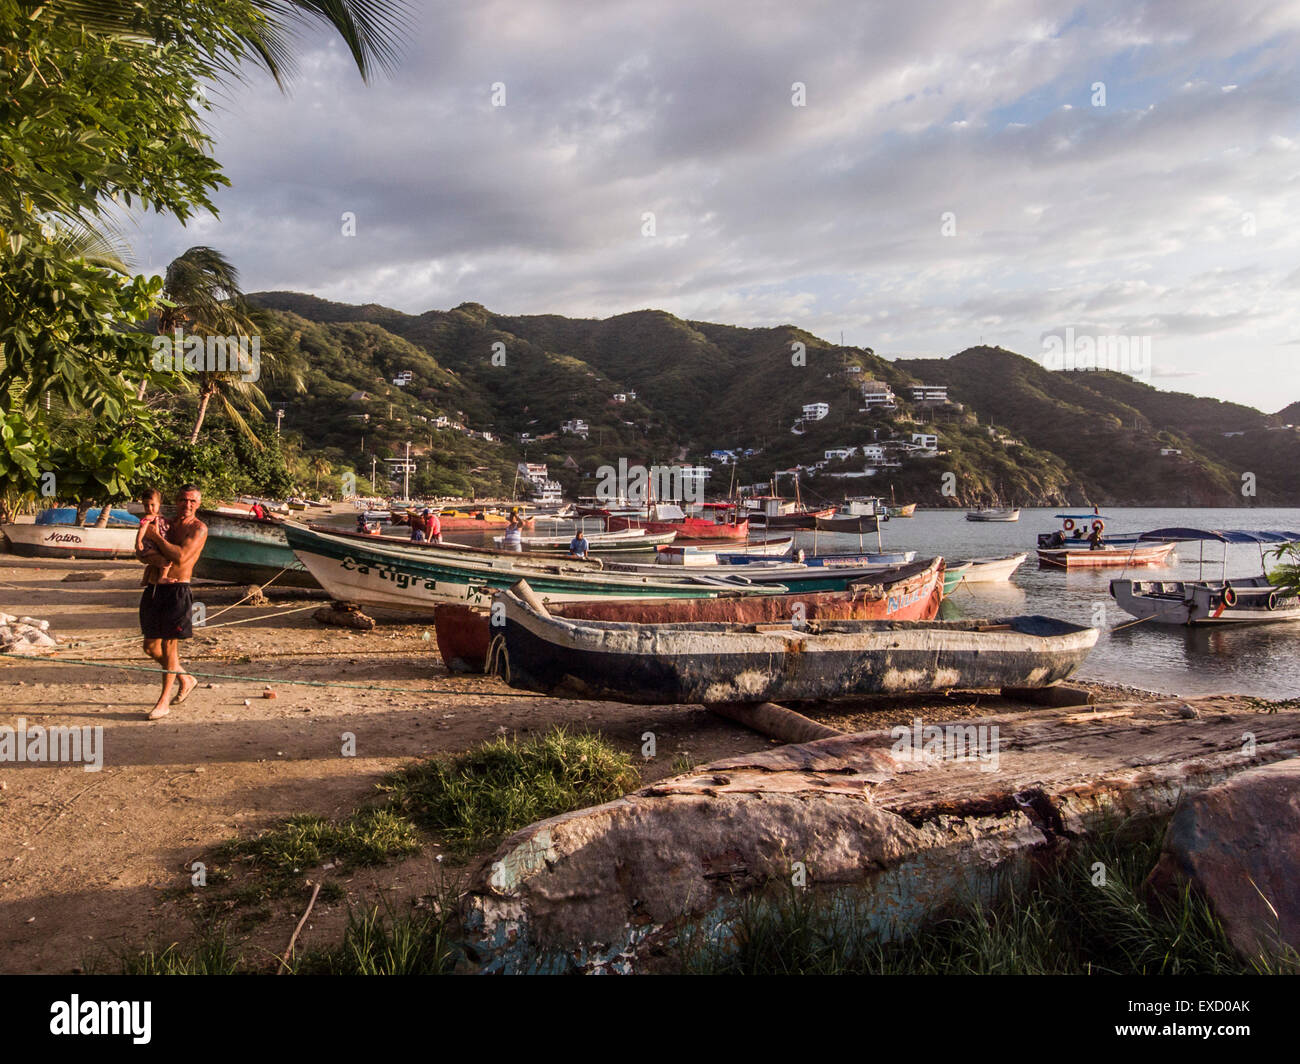 Sonnenuntergang am Strand von Taganga in der Nähe von Santa Marta, Kolumbien.   Das einst kleine Fischerdorf an der Karibik ist eine Bevölkerung geworden. Stockfoto